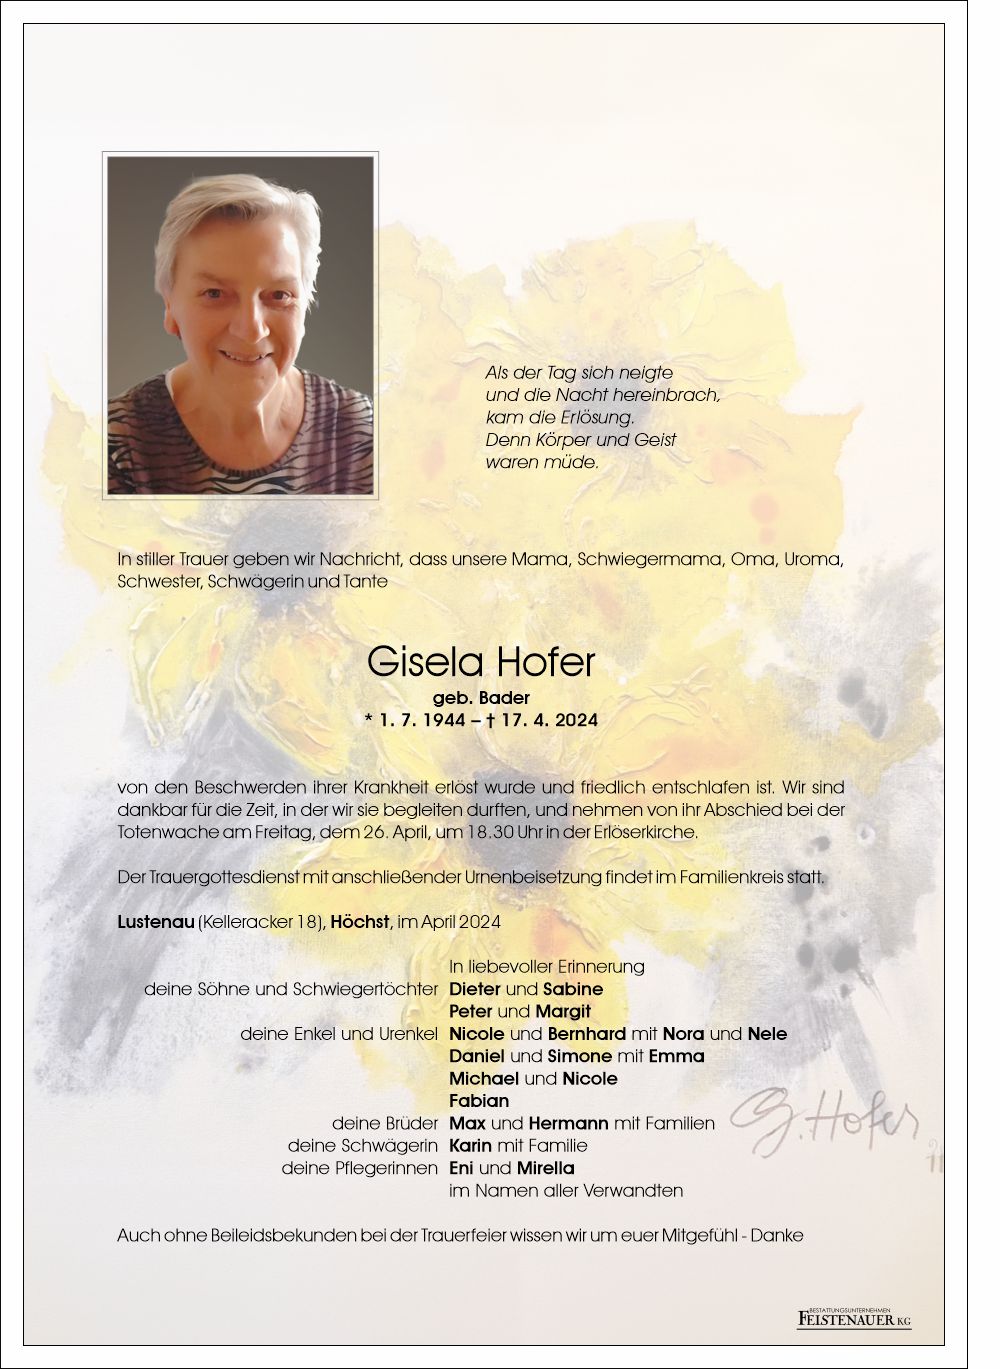 Gisela Hofer